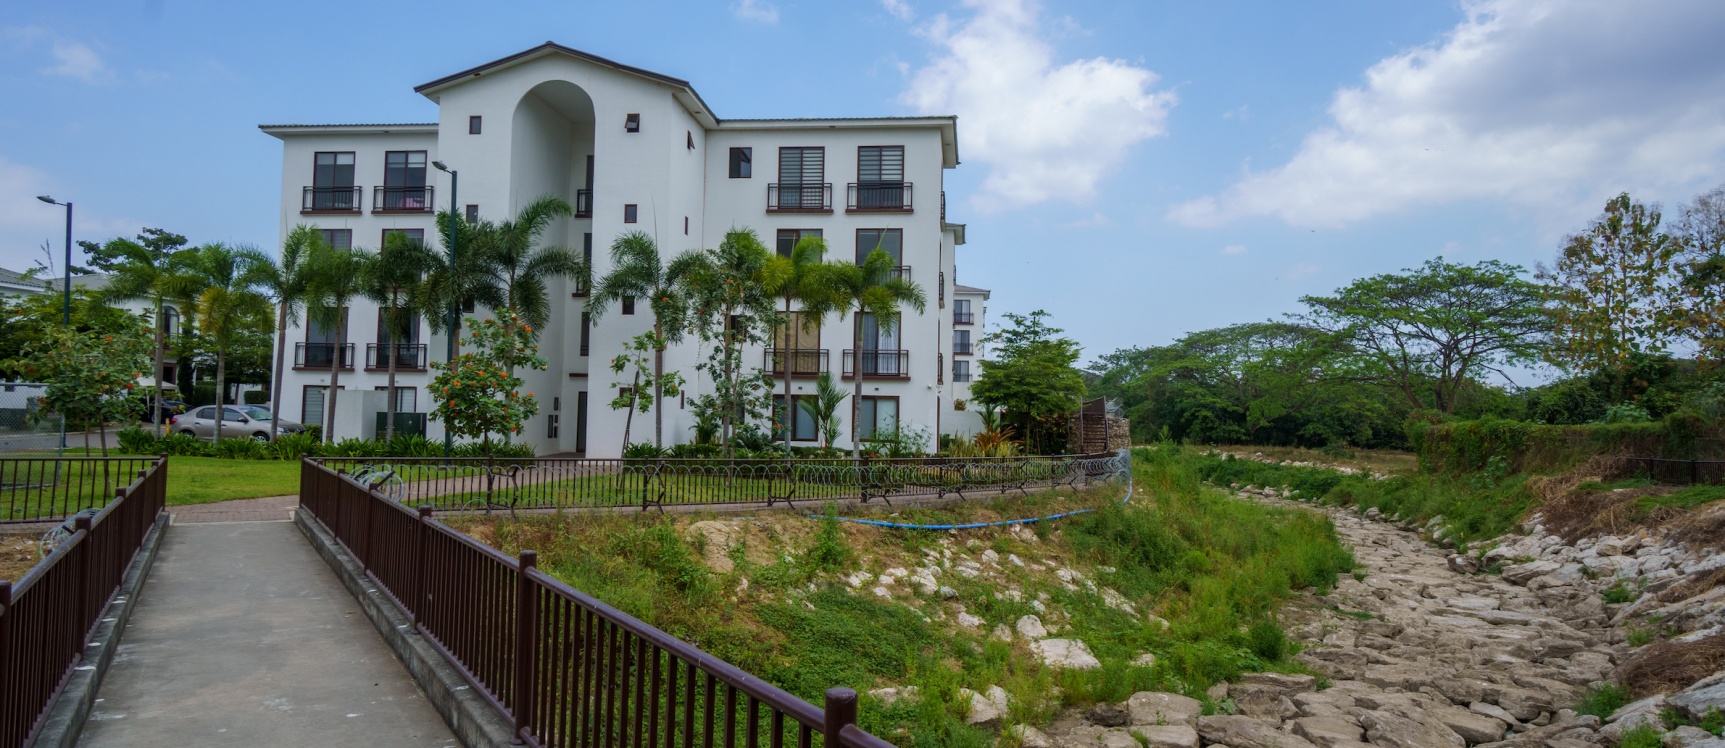 GeoBienes - Departamento 3 habitaciones en venta ubicada en la Urbanización Villas del Bosque - Plusvalia Guayaquil Casas de venta y alquiler Inmobiliaria Ecuador